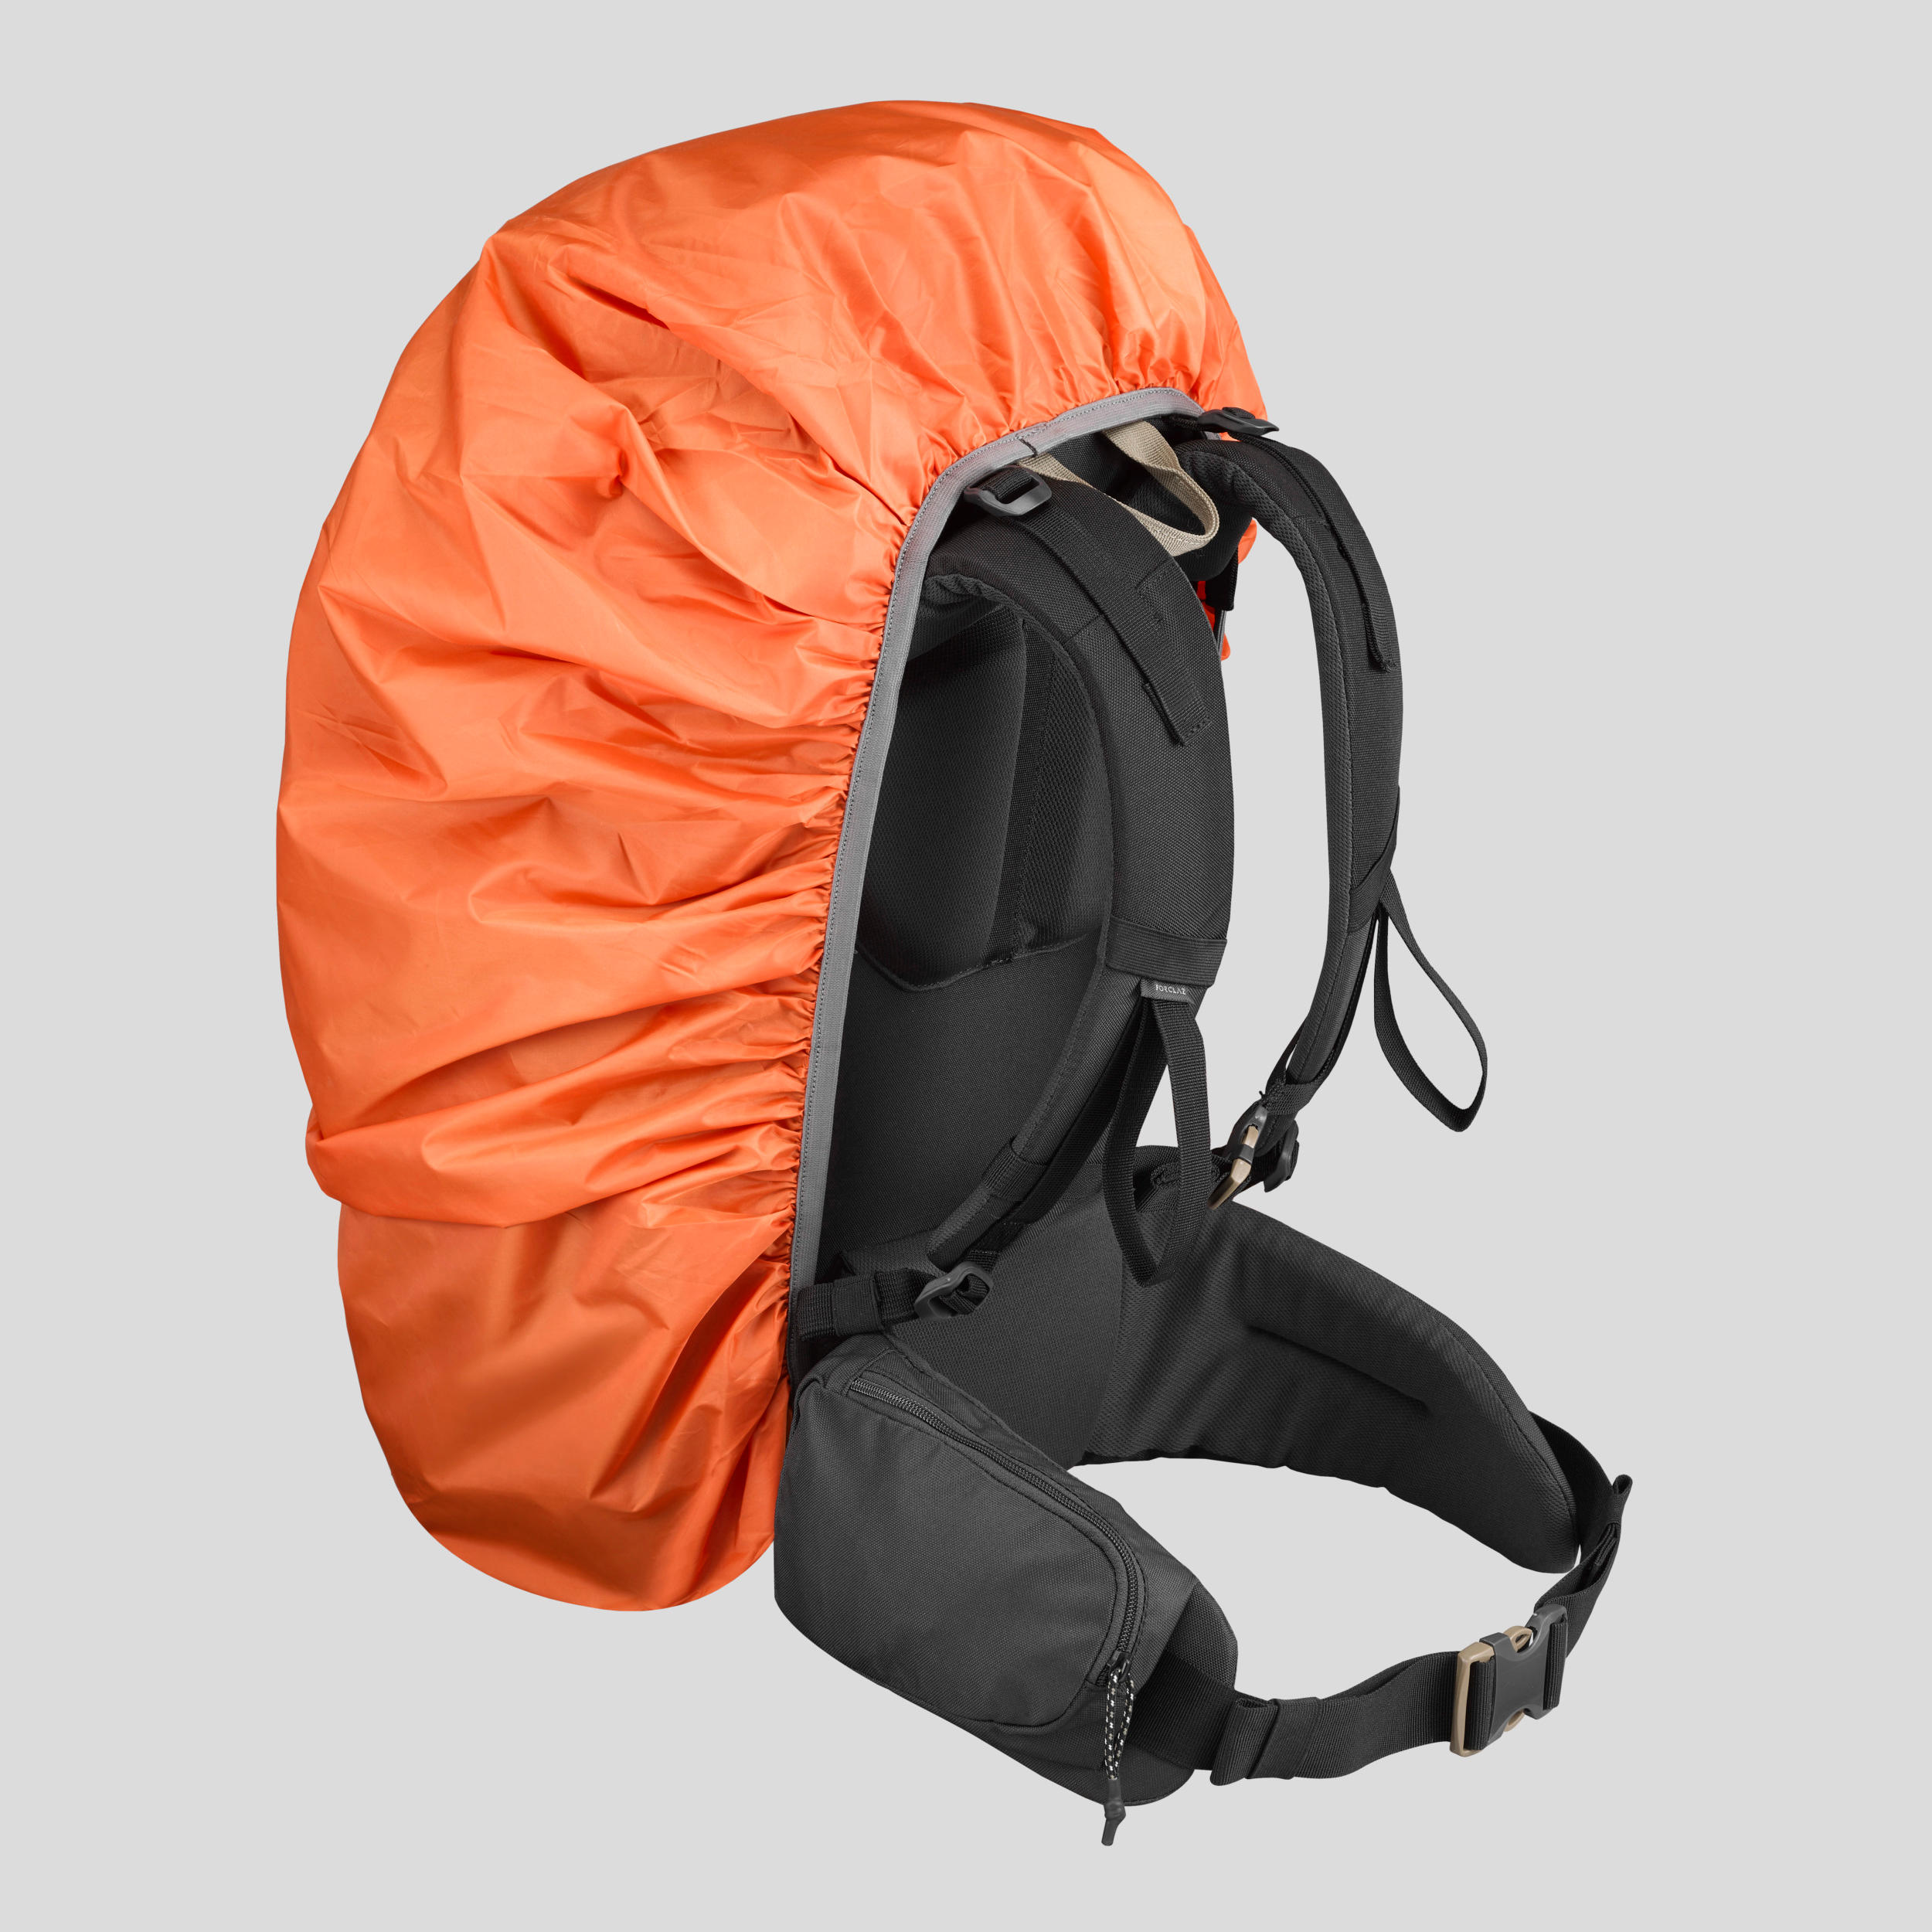 Trekking Basic Rain Cover for Backpack 